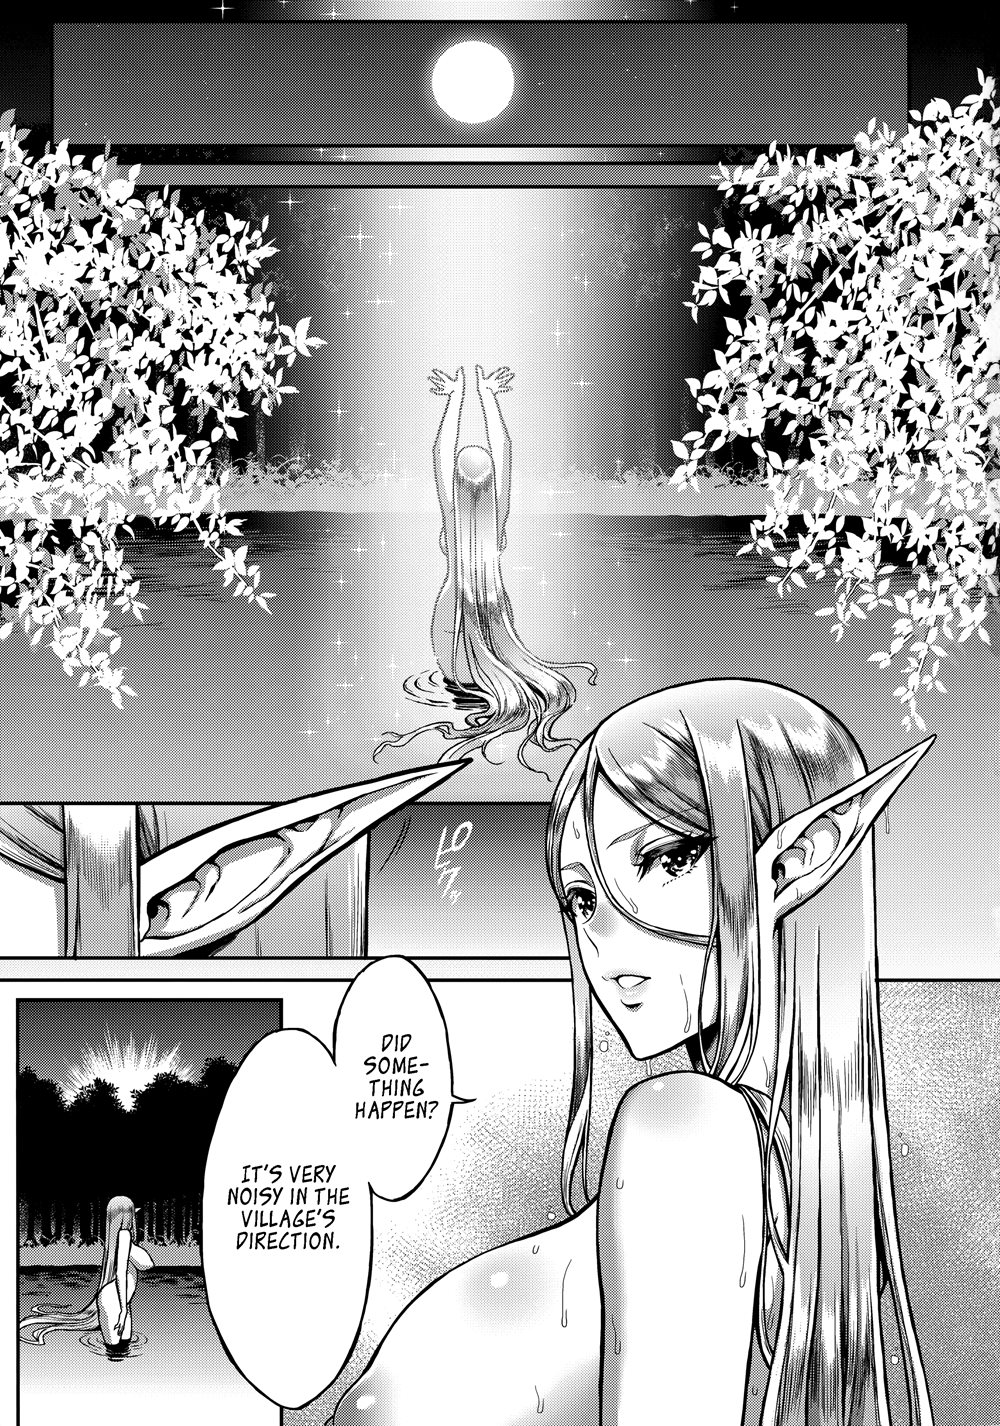 Elf adult manga